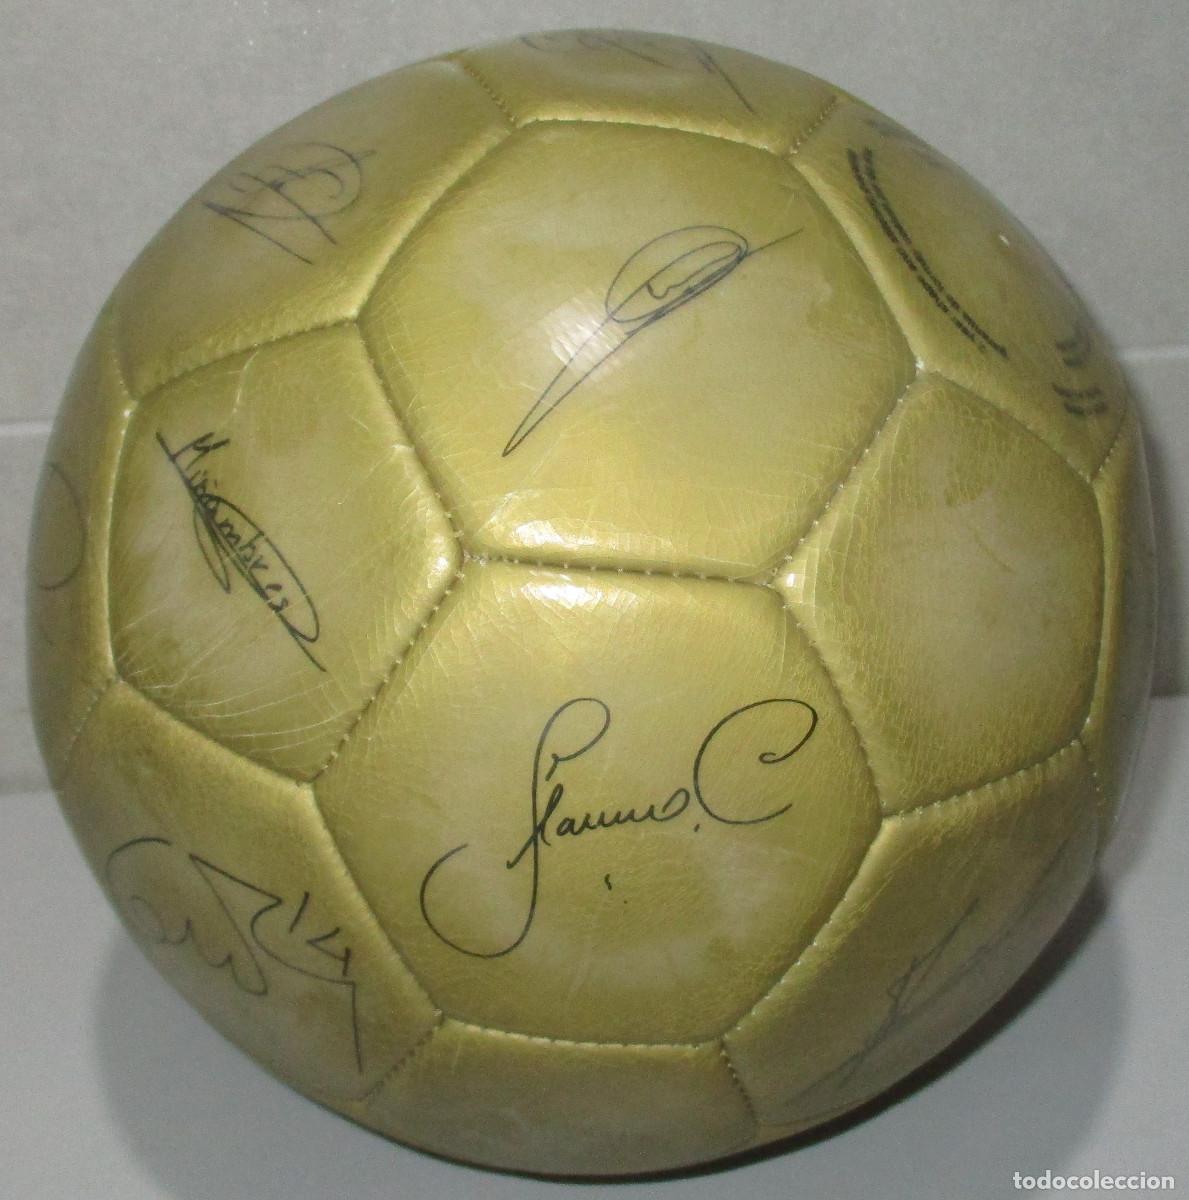 balón fútbol real madrid, con firmas serigrafia - Compra venta en  todocoleccion